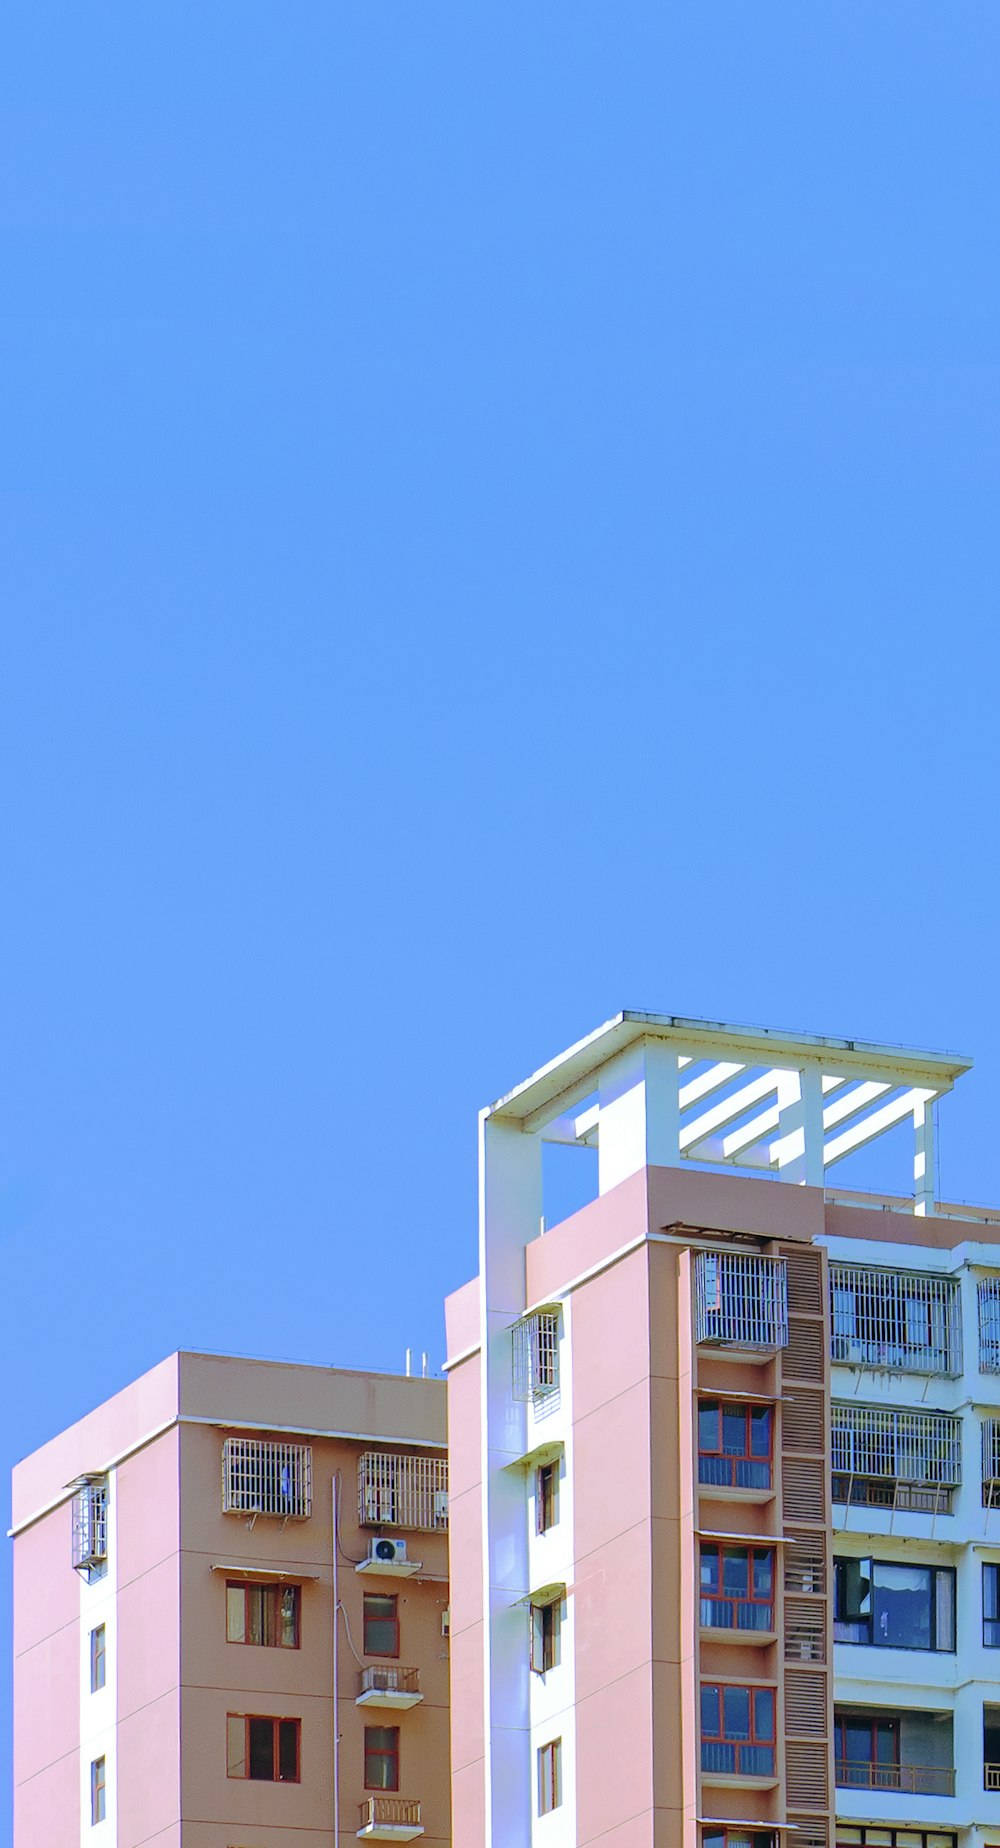 edificio in cemento bianco sotto il cielo blu durante il giorno